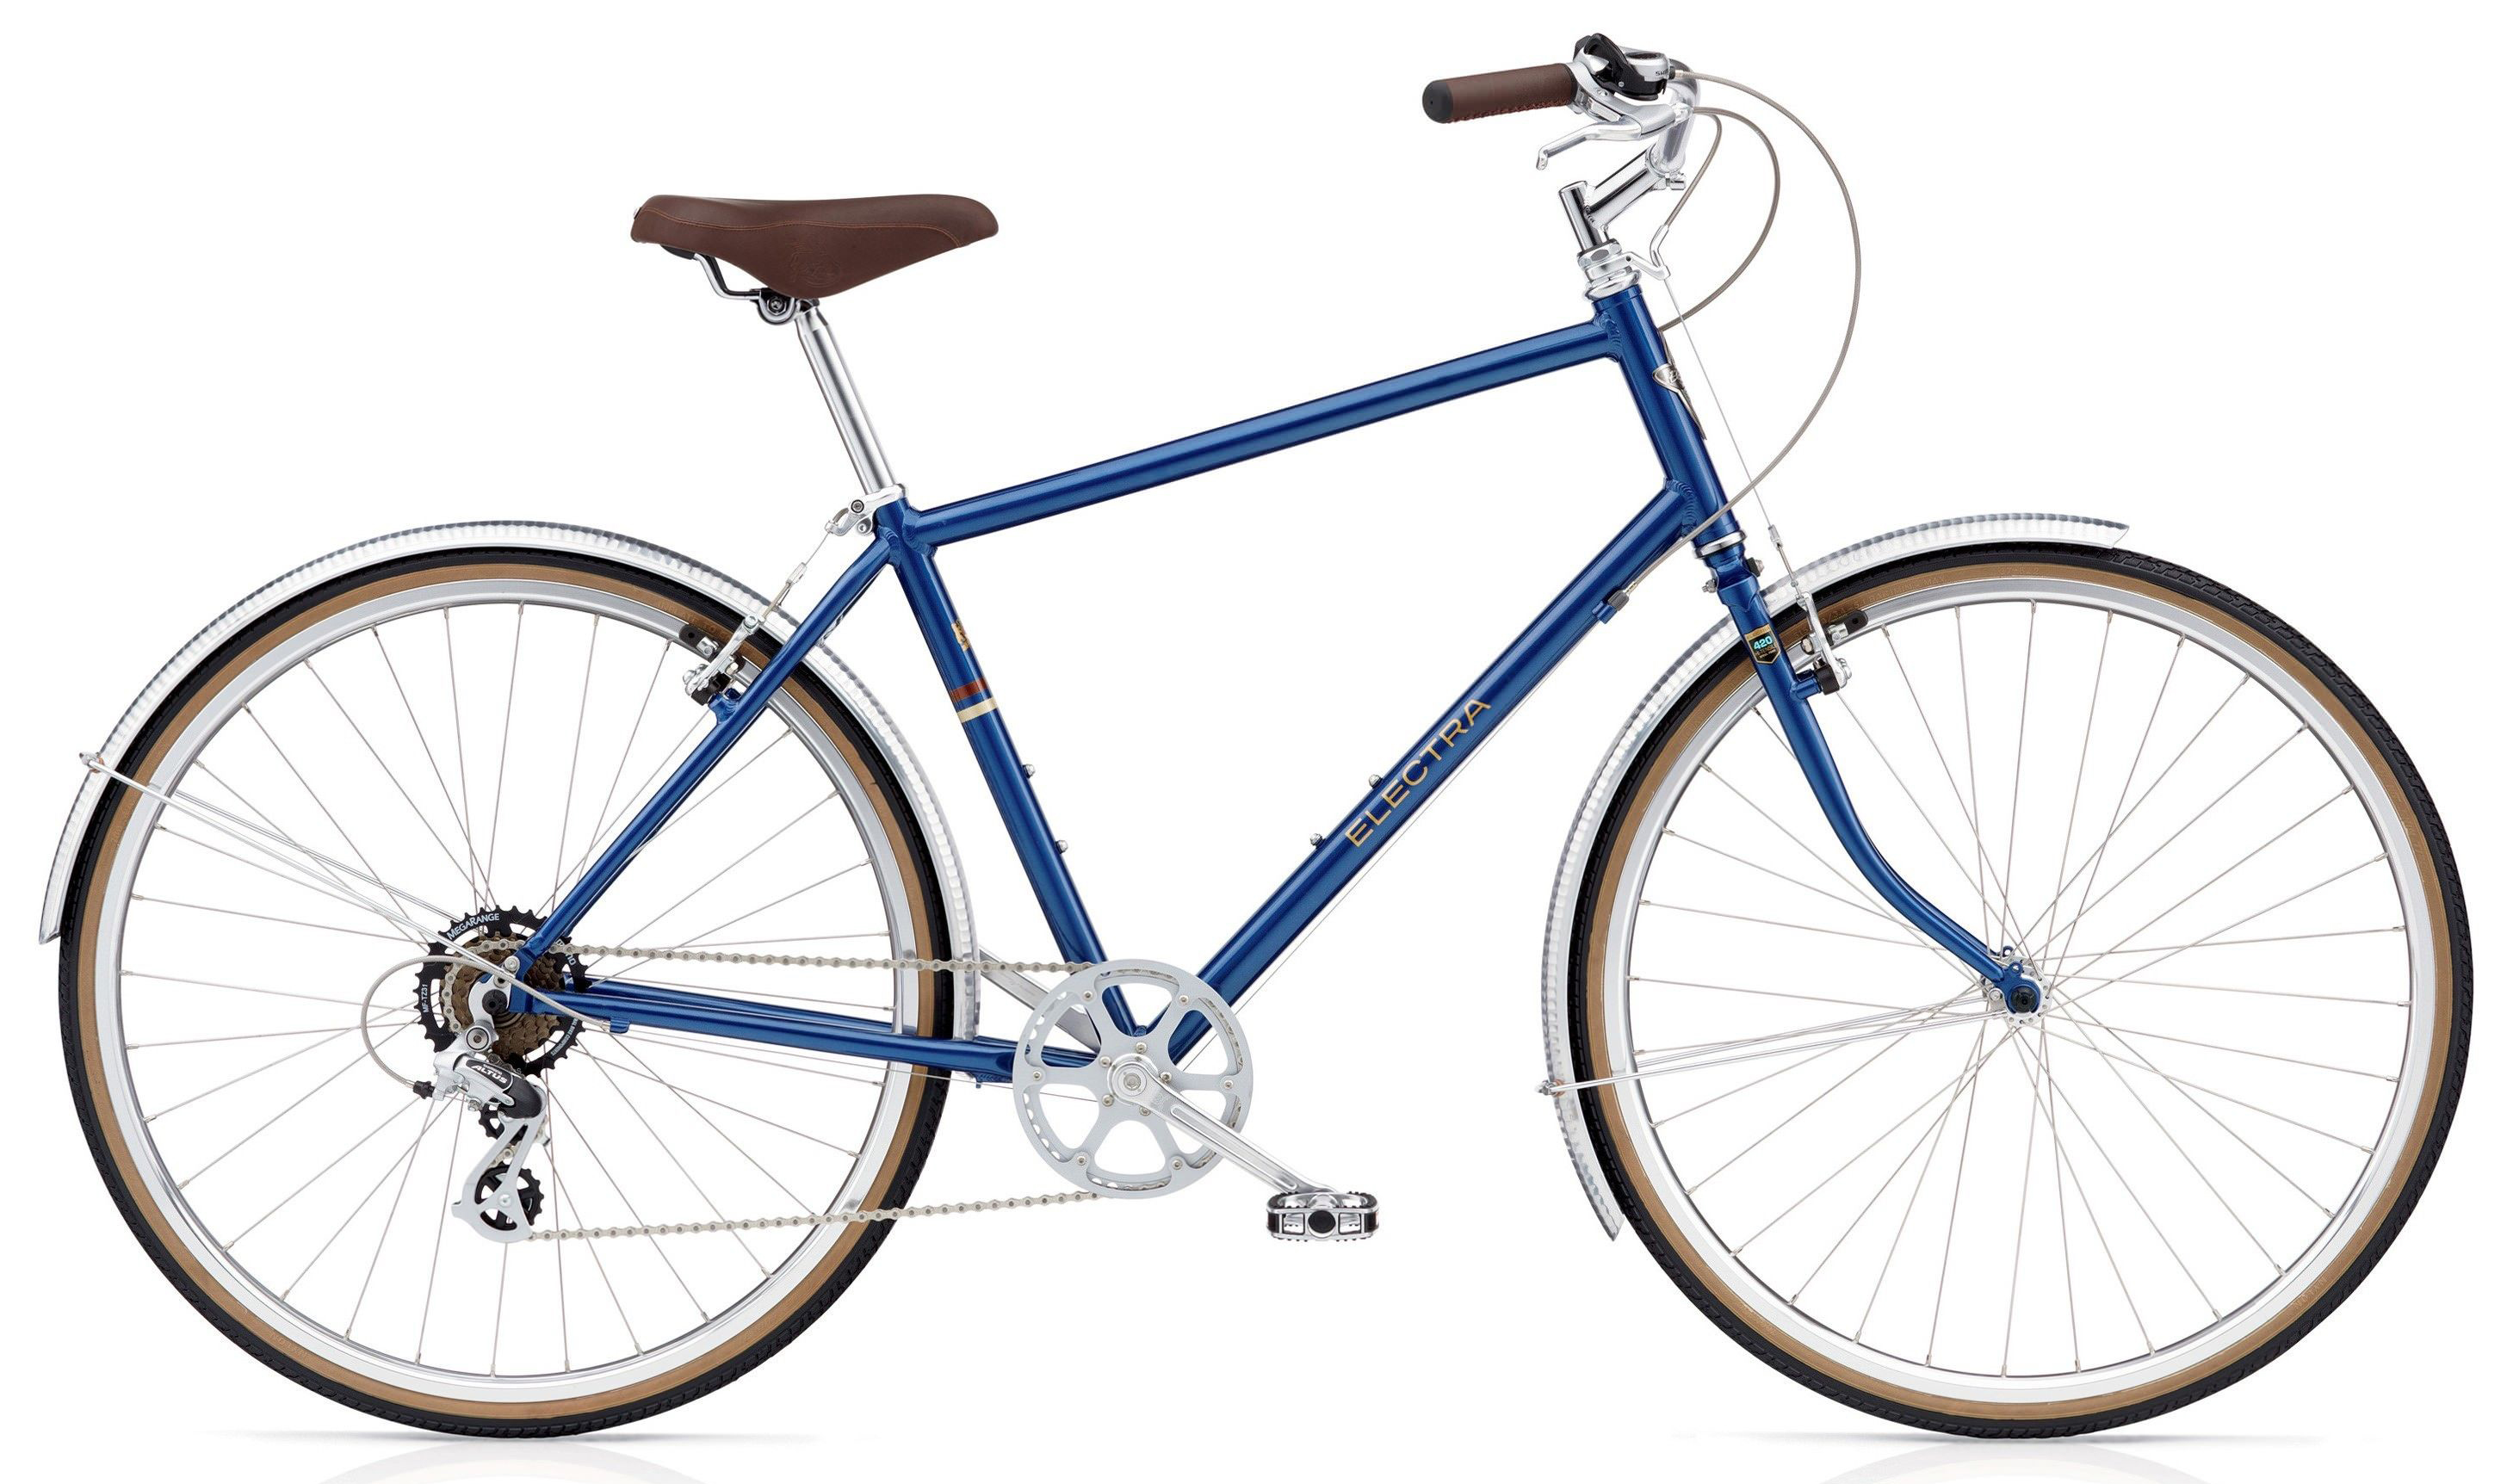  Отзывы о Городском велосипеде Electra Ticino 7D 2019